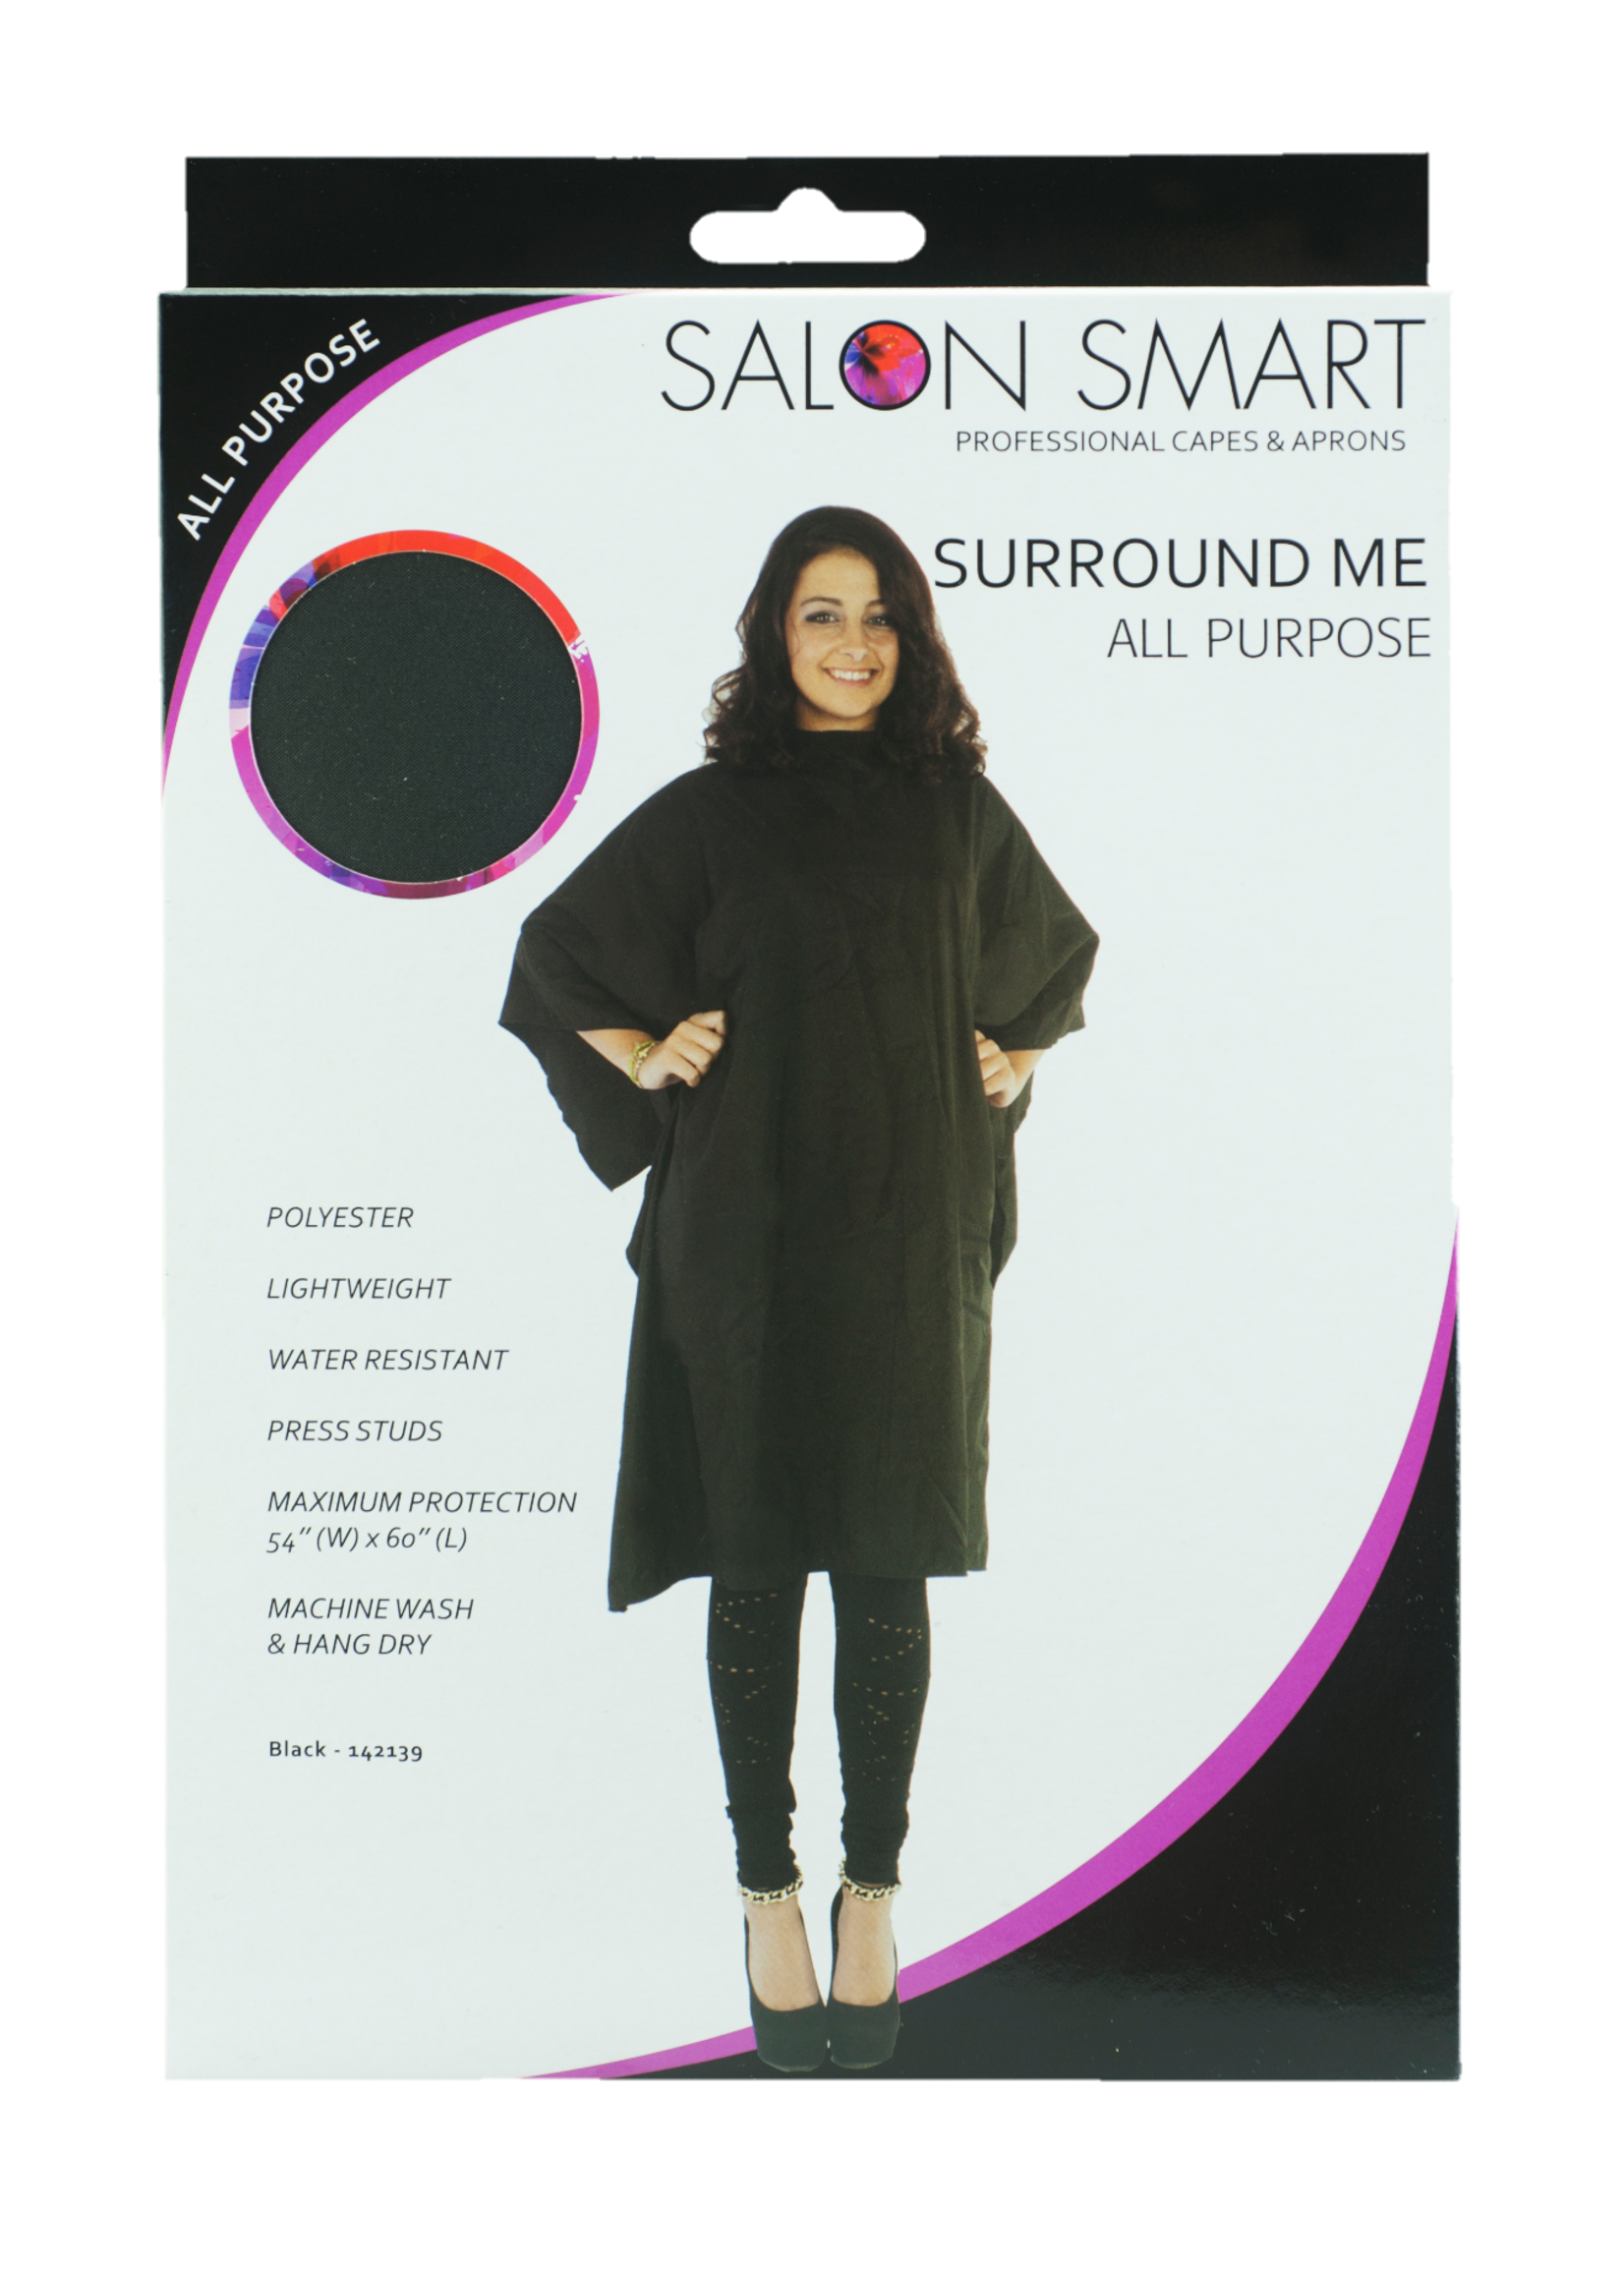 Salon Smart Salon Smart Surround Me All Purpose Cape